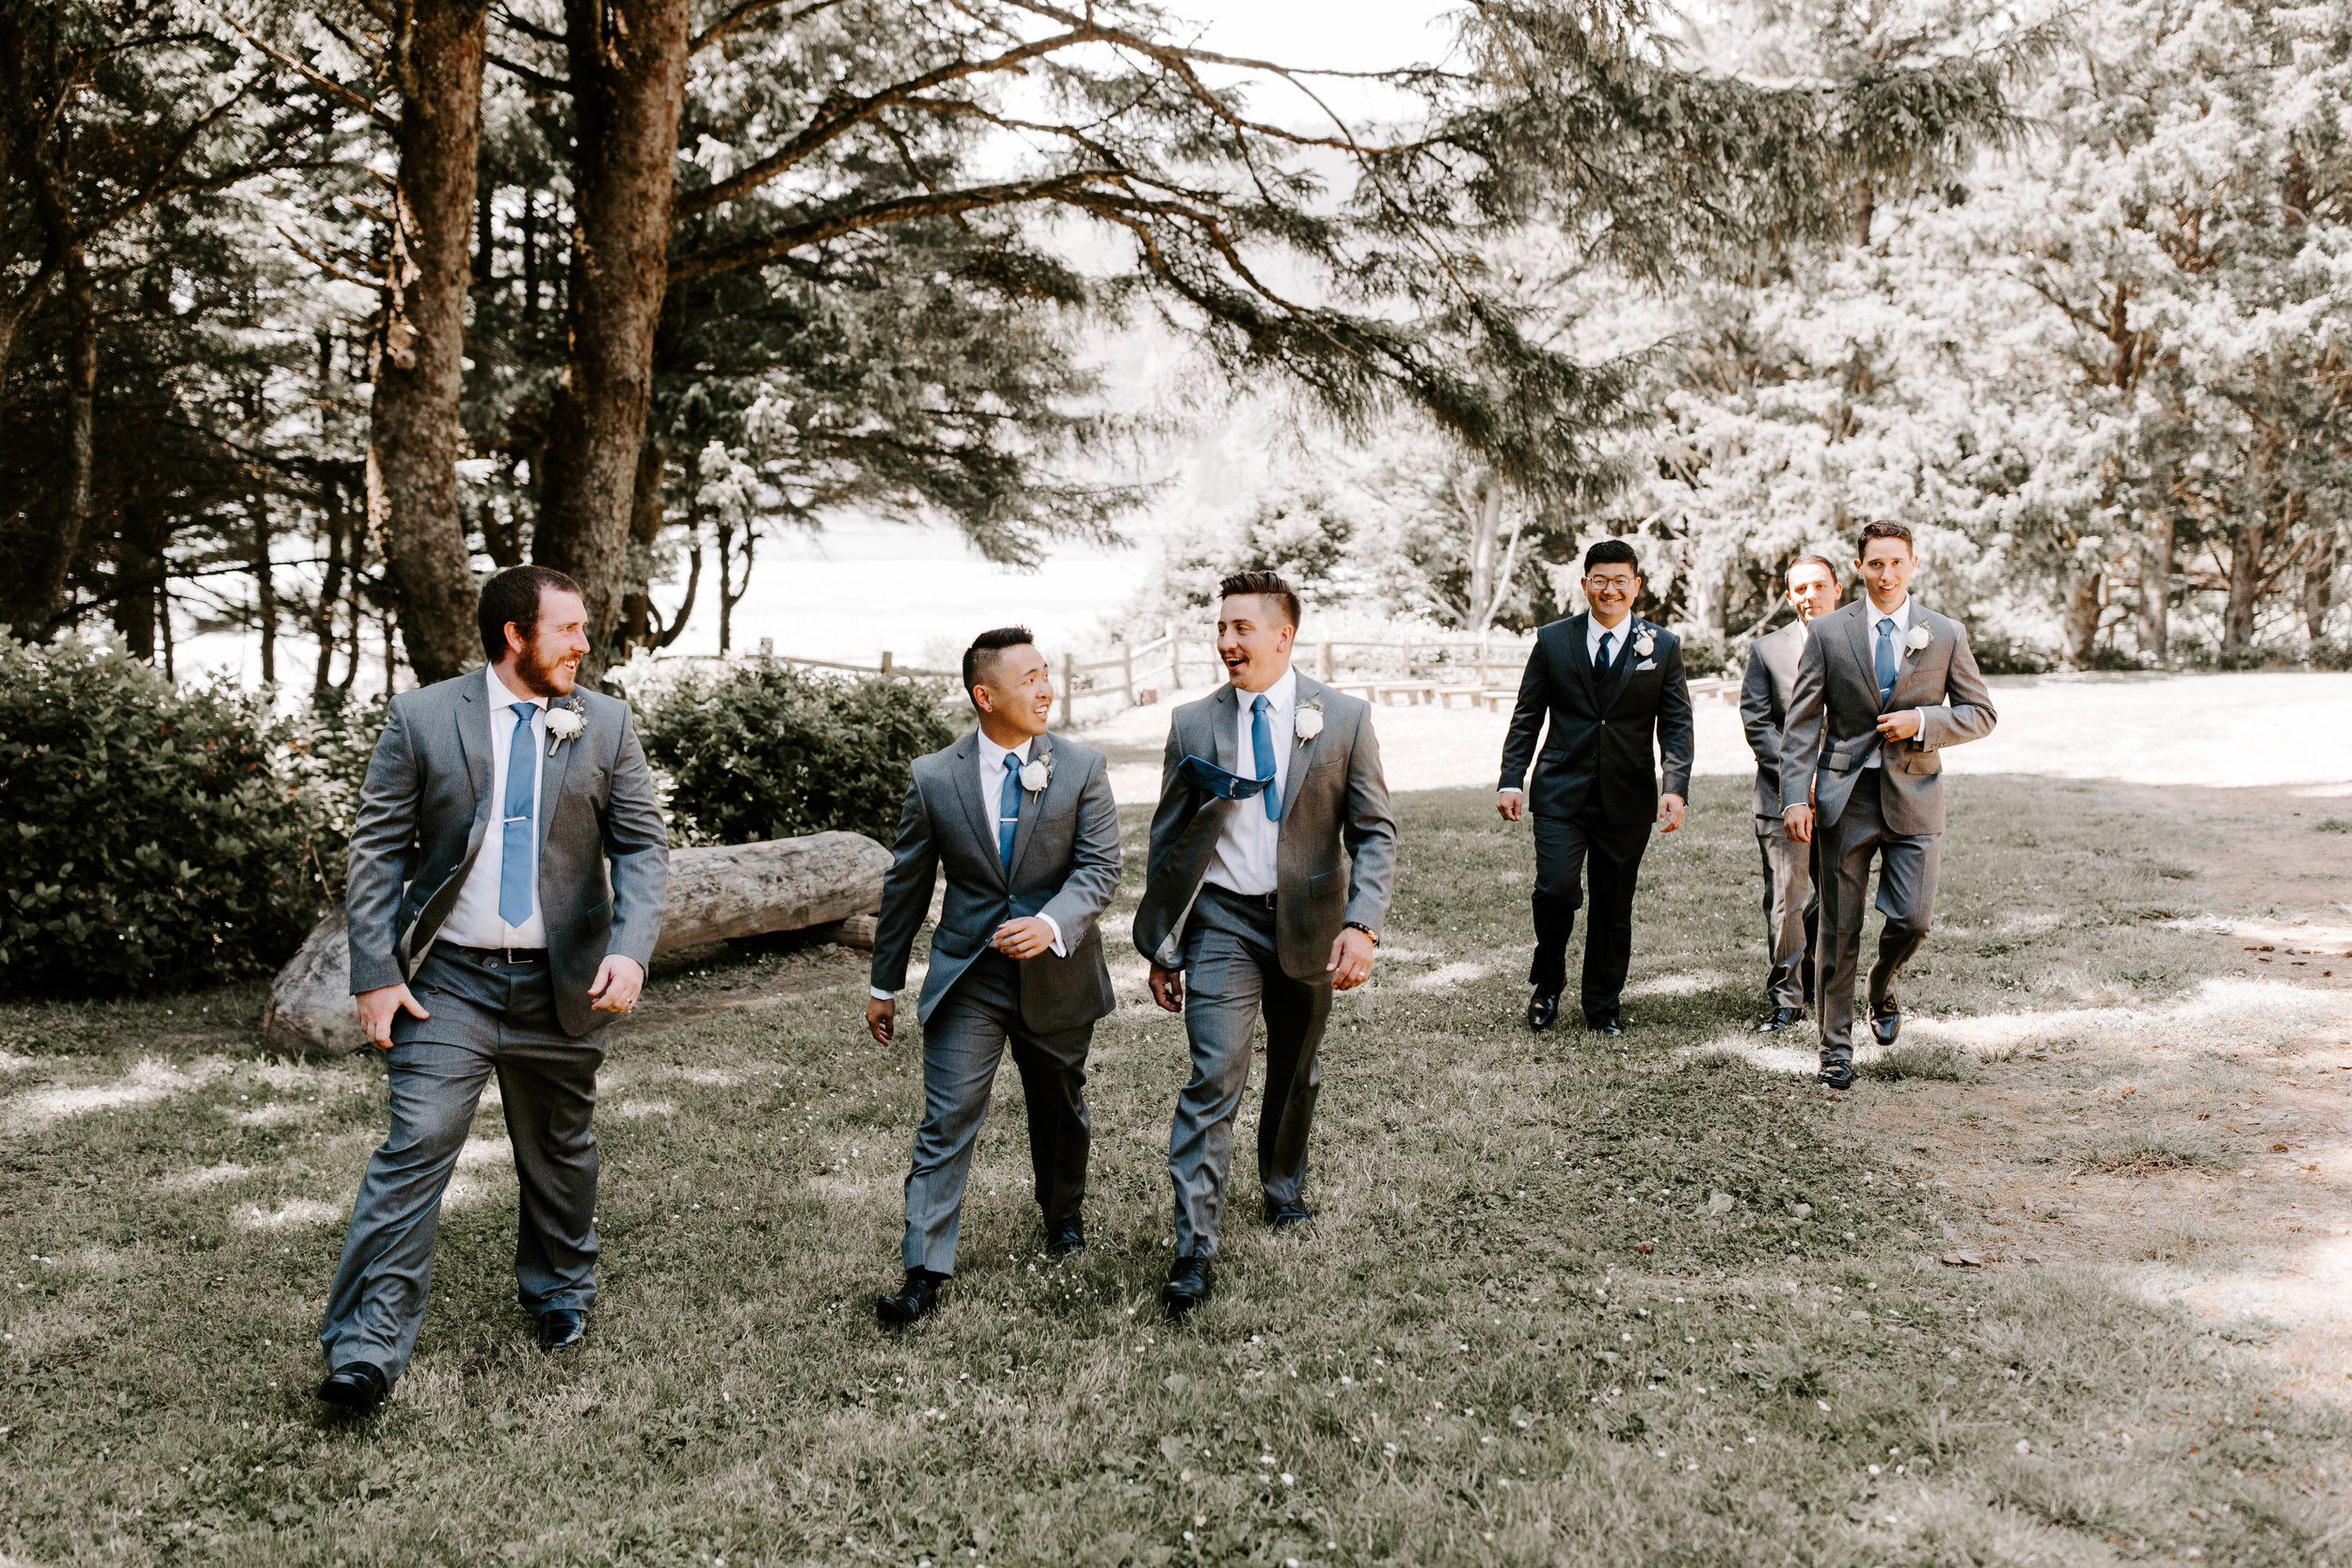 Oregon Wedding Photographer | Groomsmen Style | Rustic Bloom Photography